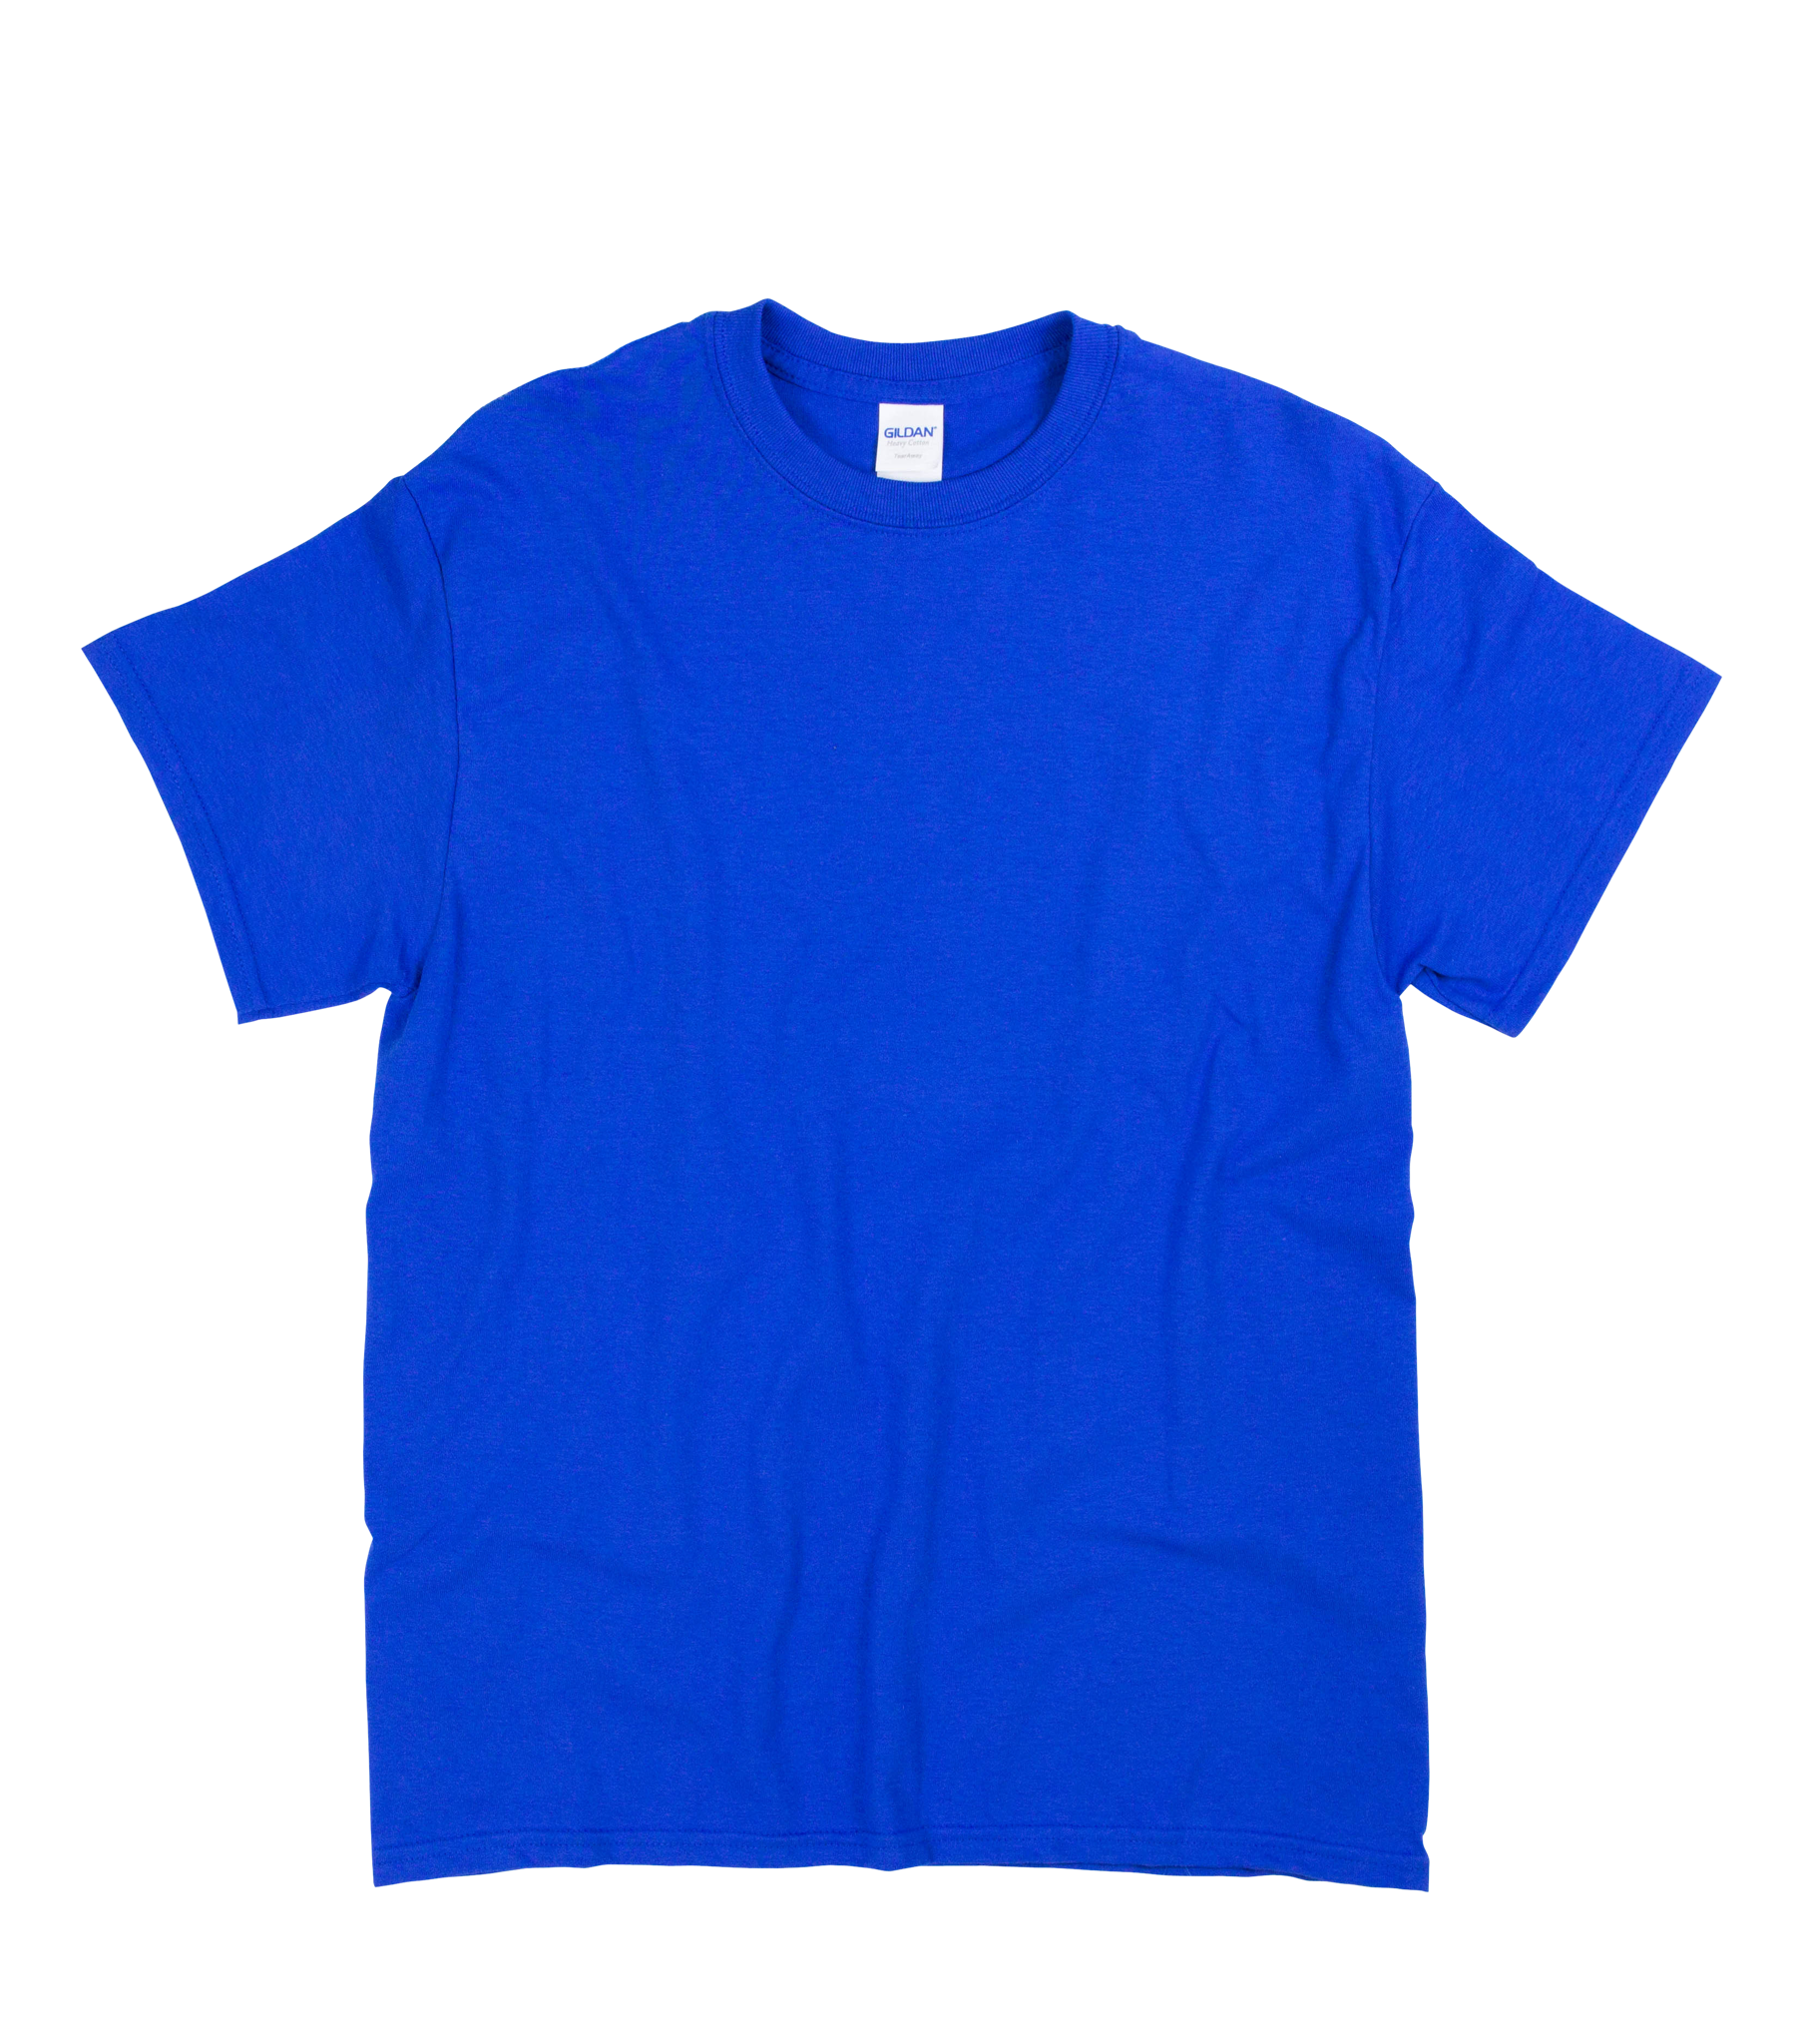 Blue T Shirt Png - Free Logo Image